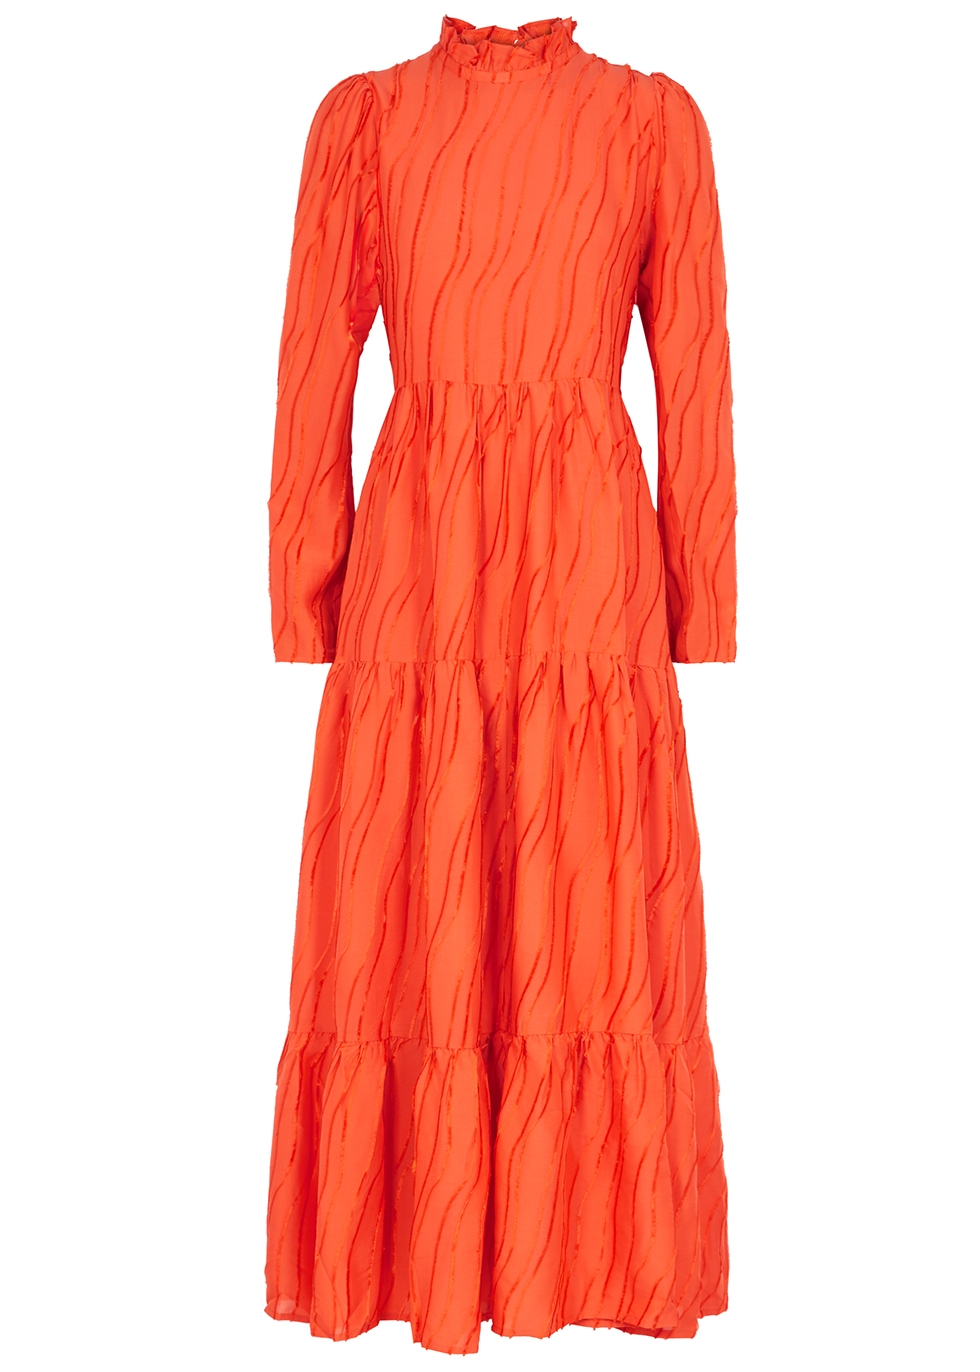 Stine Goya Judy orange devoré maxi dress - Harvey Nichols